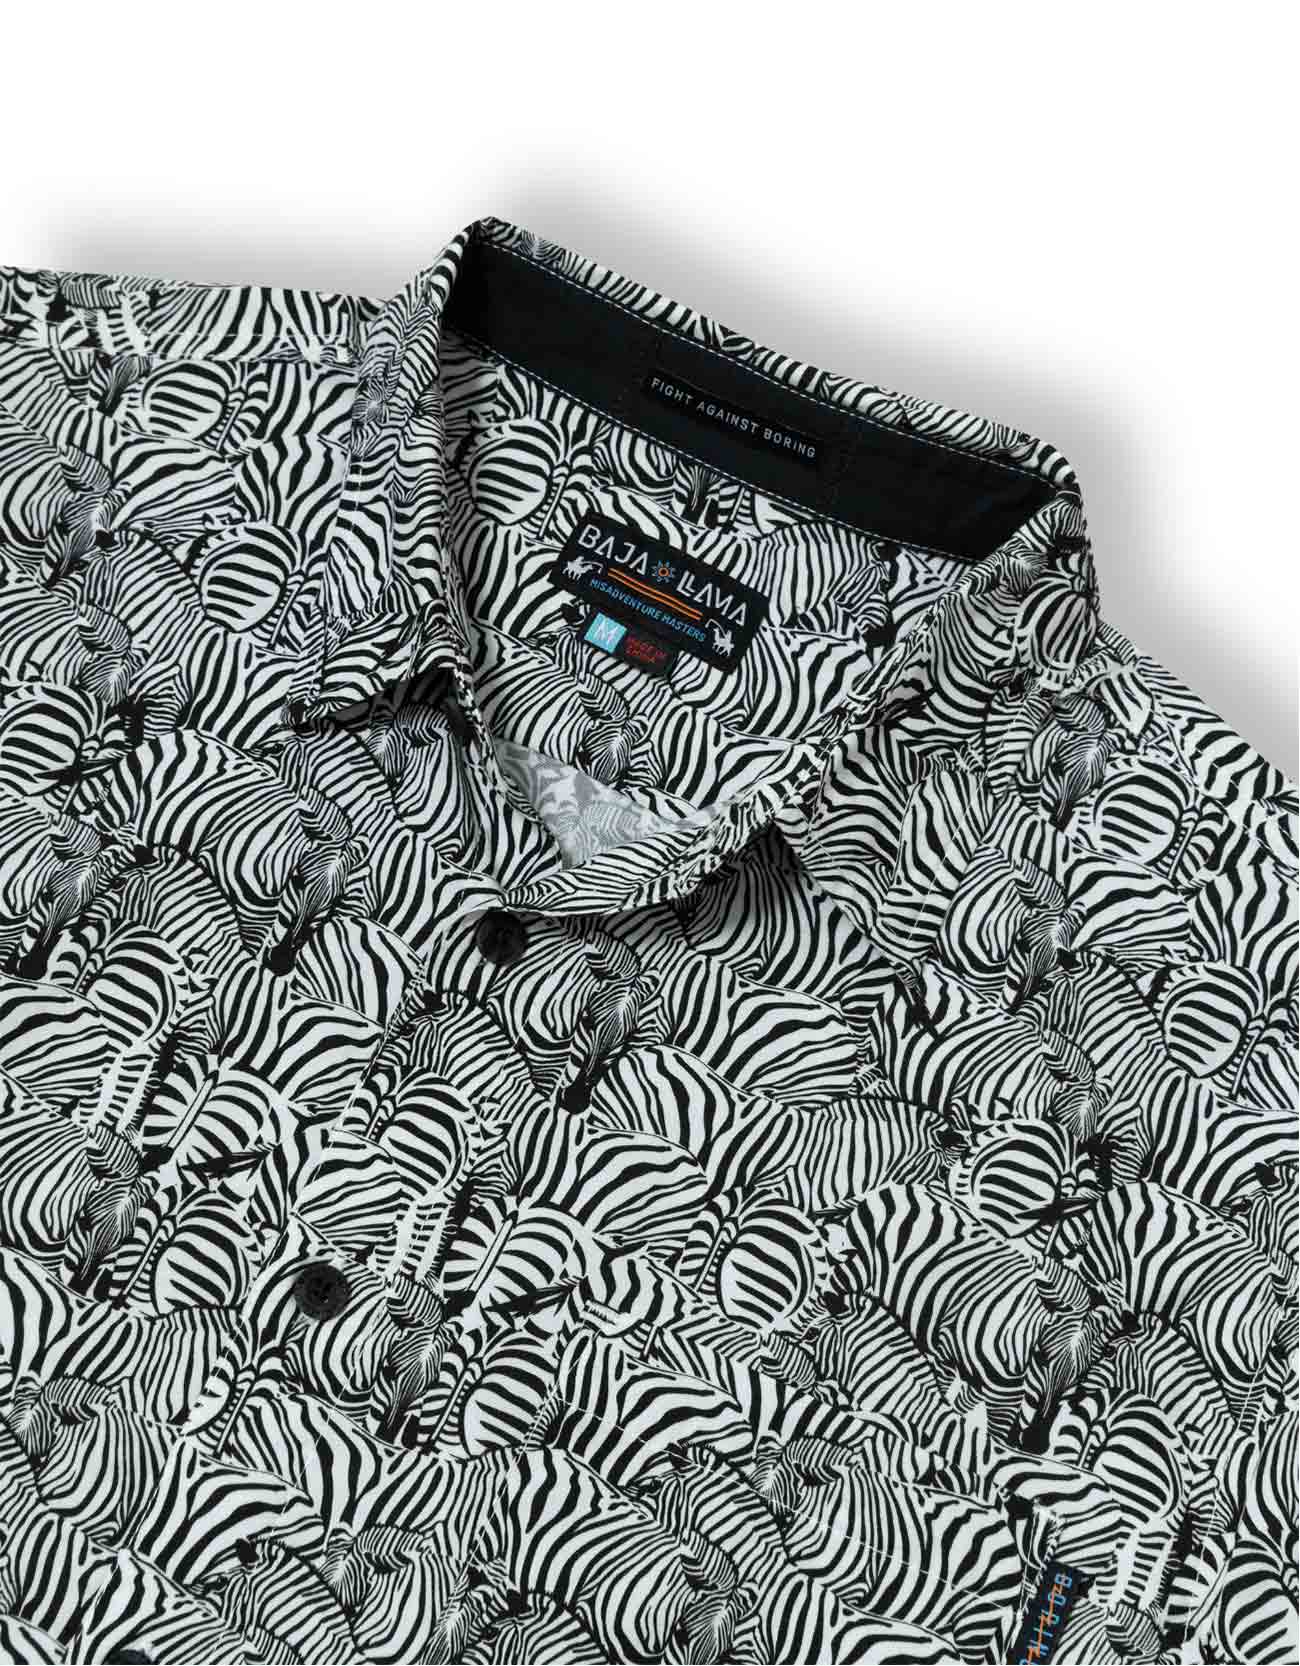 Black button up with subtle zebra stripe print and side pocket